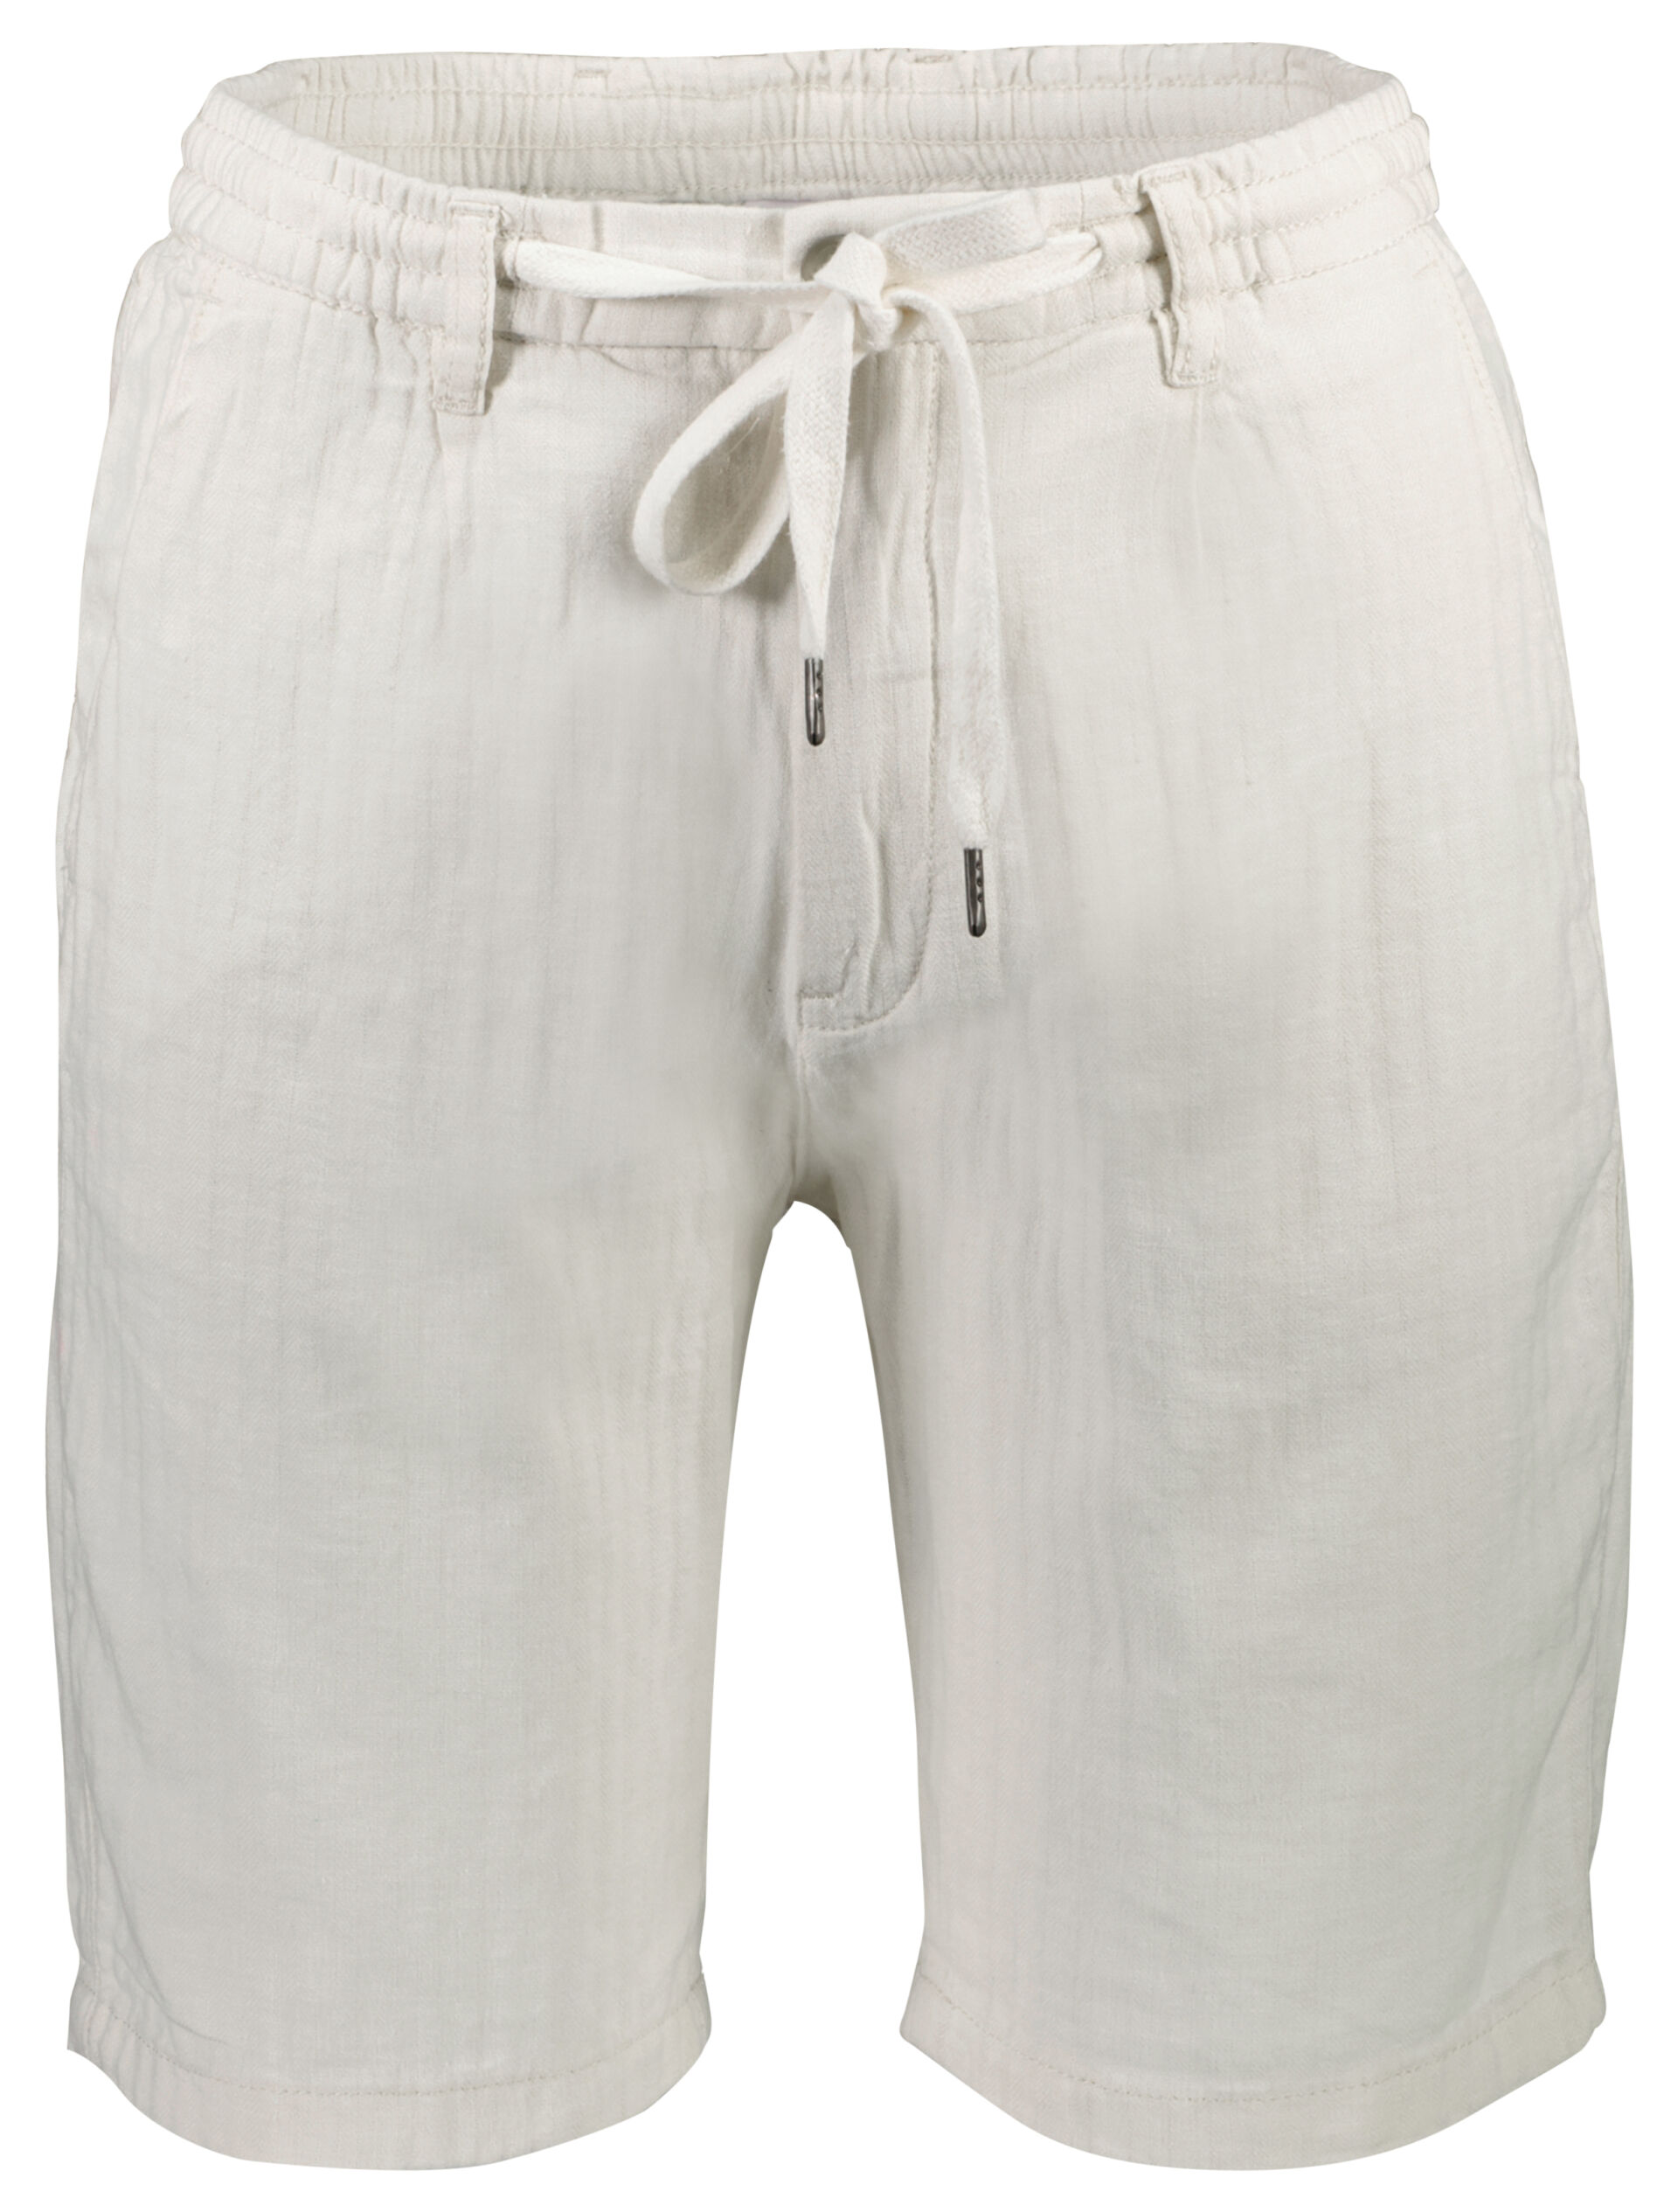 Linen shorts Linen shorts White 60-505020